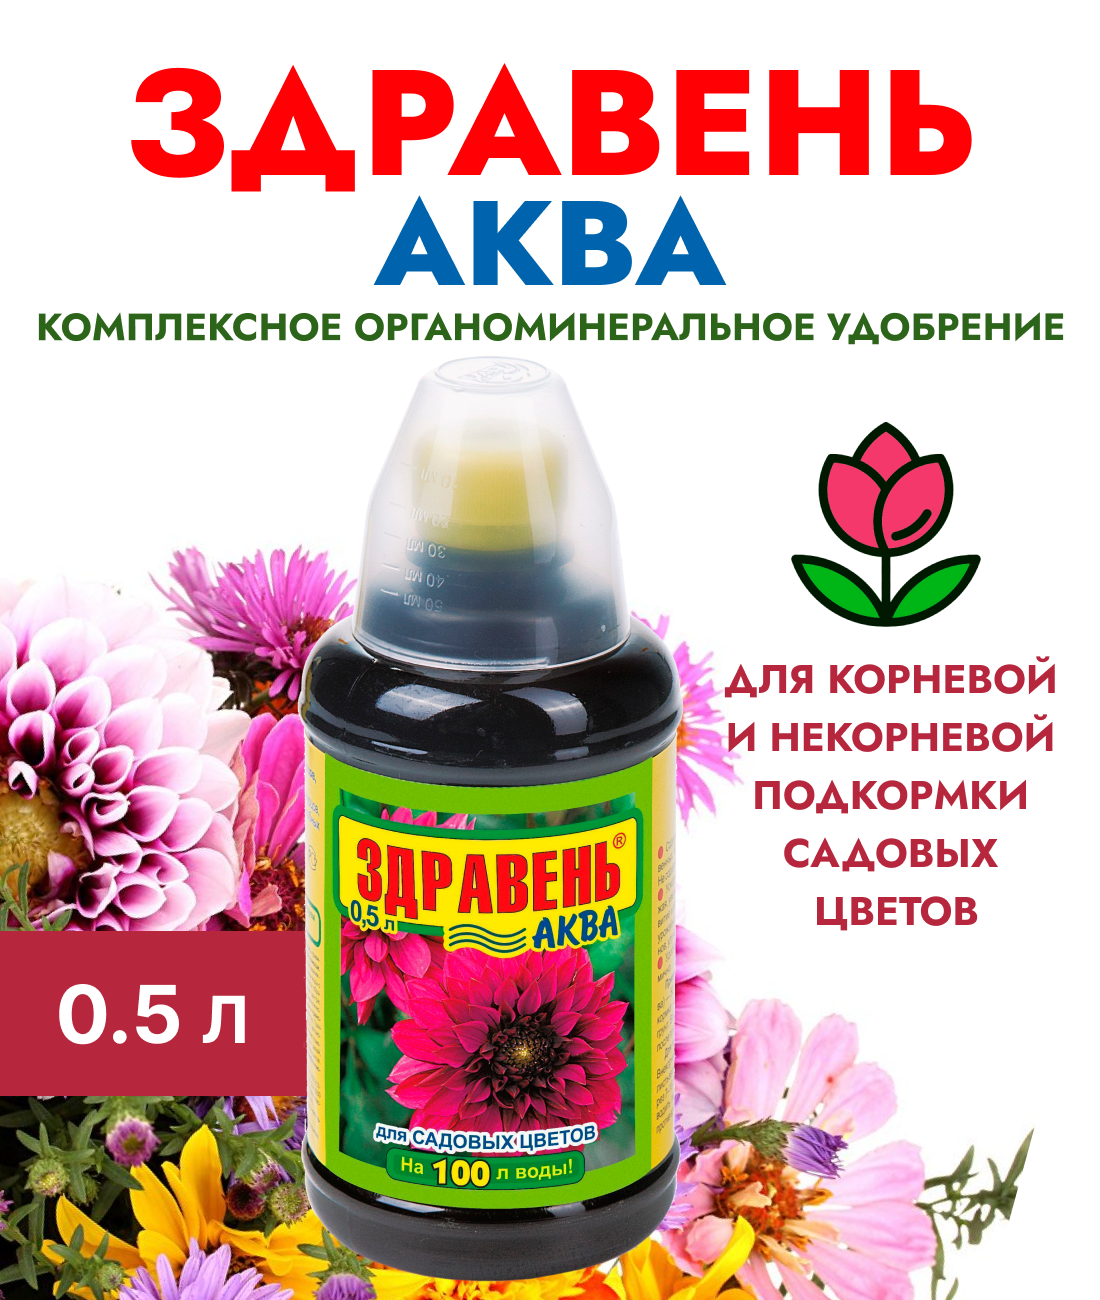 Удобрение Здравень Аква садовые цветы, с мерным стаканчиком 0,5 л